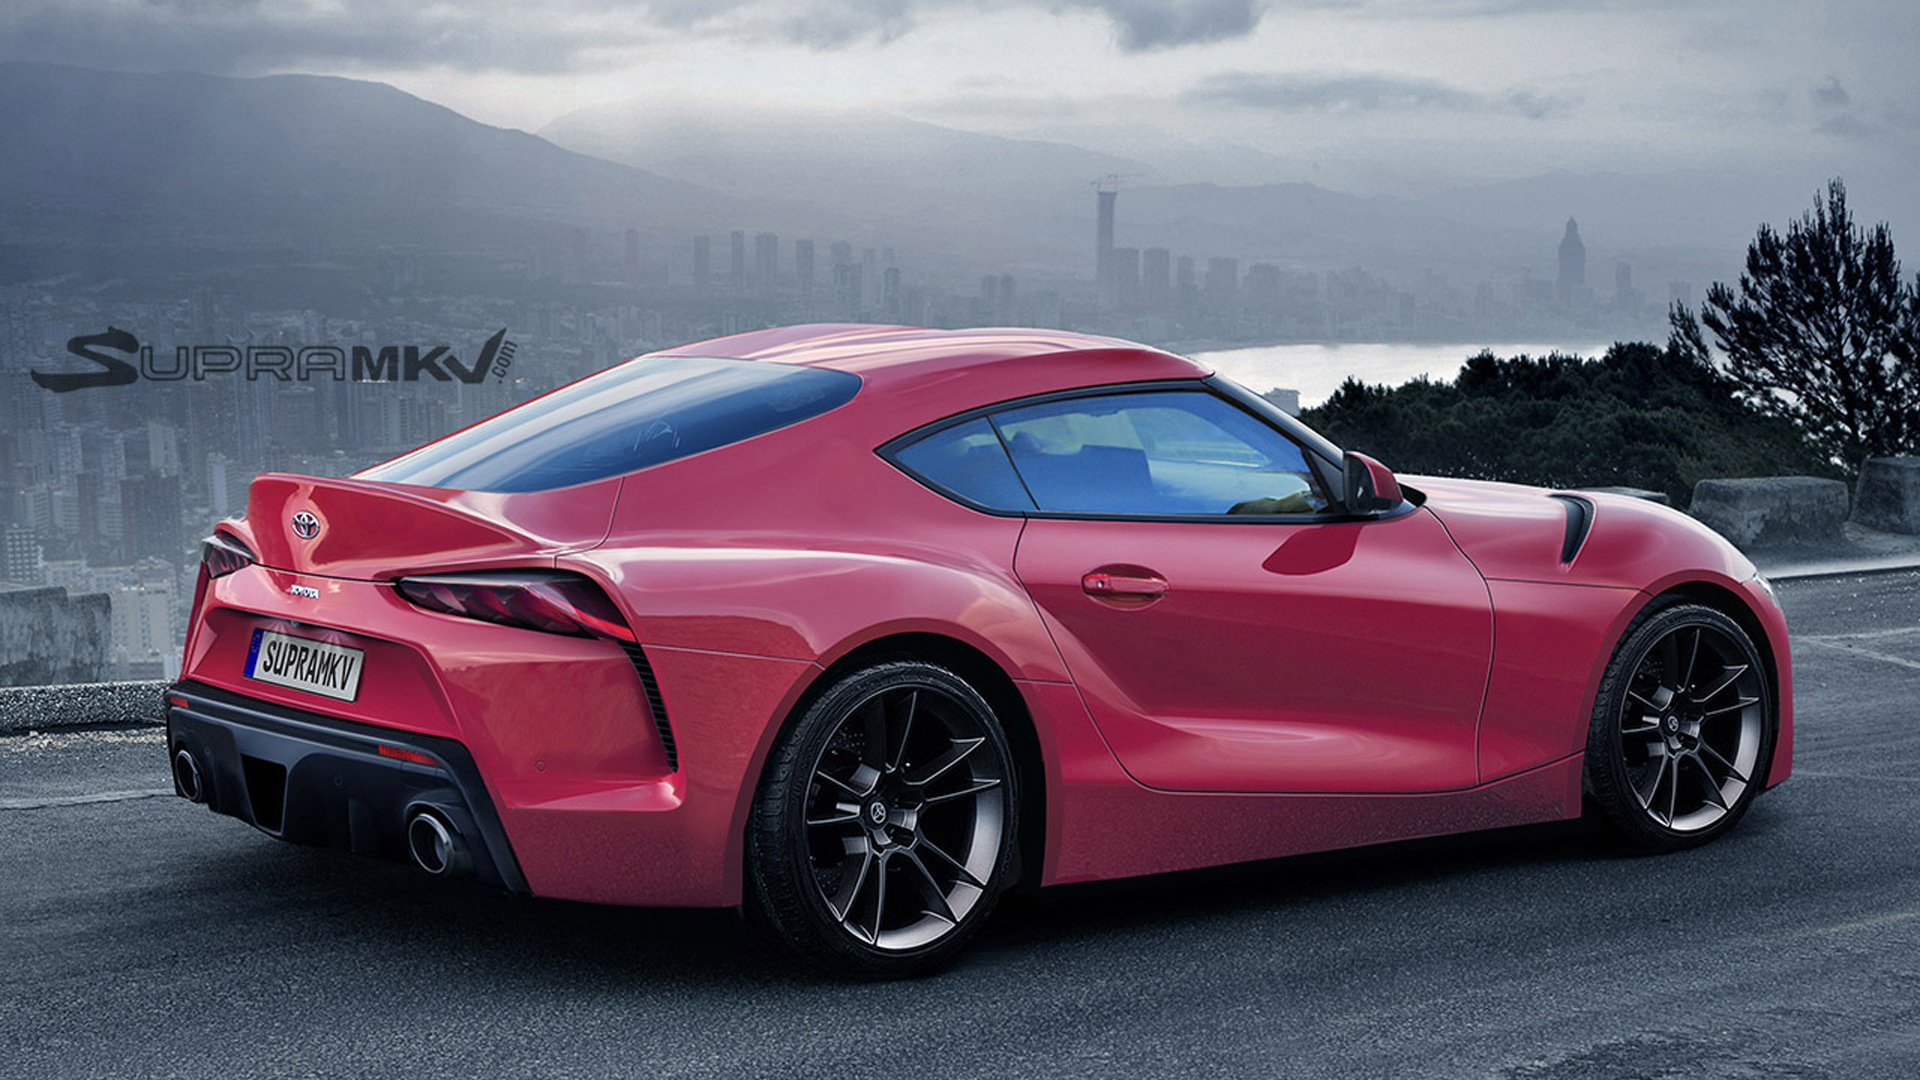 2020 Toyota Supra rendering - Image via SupraMkV